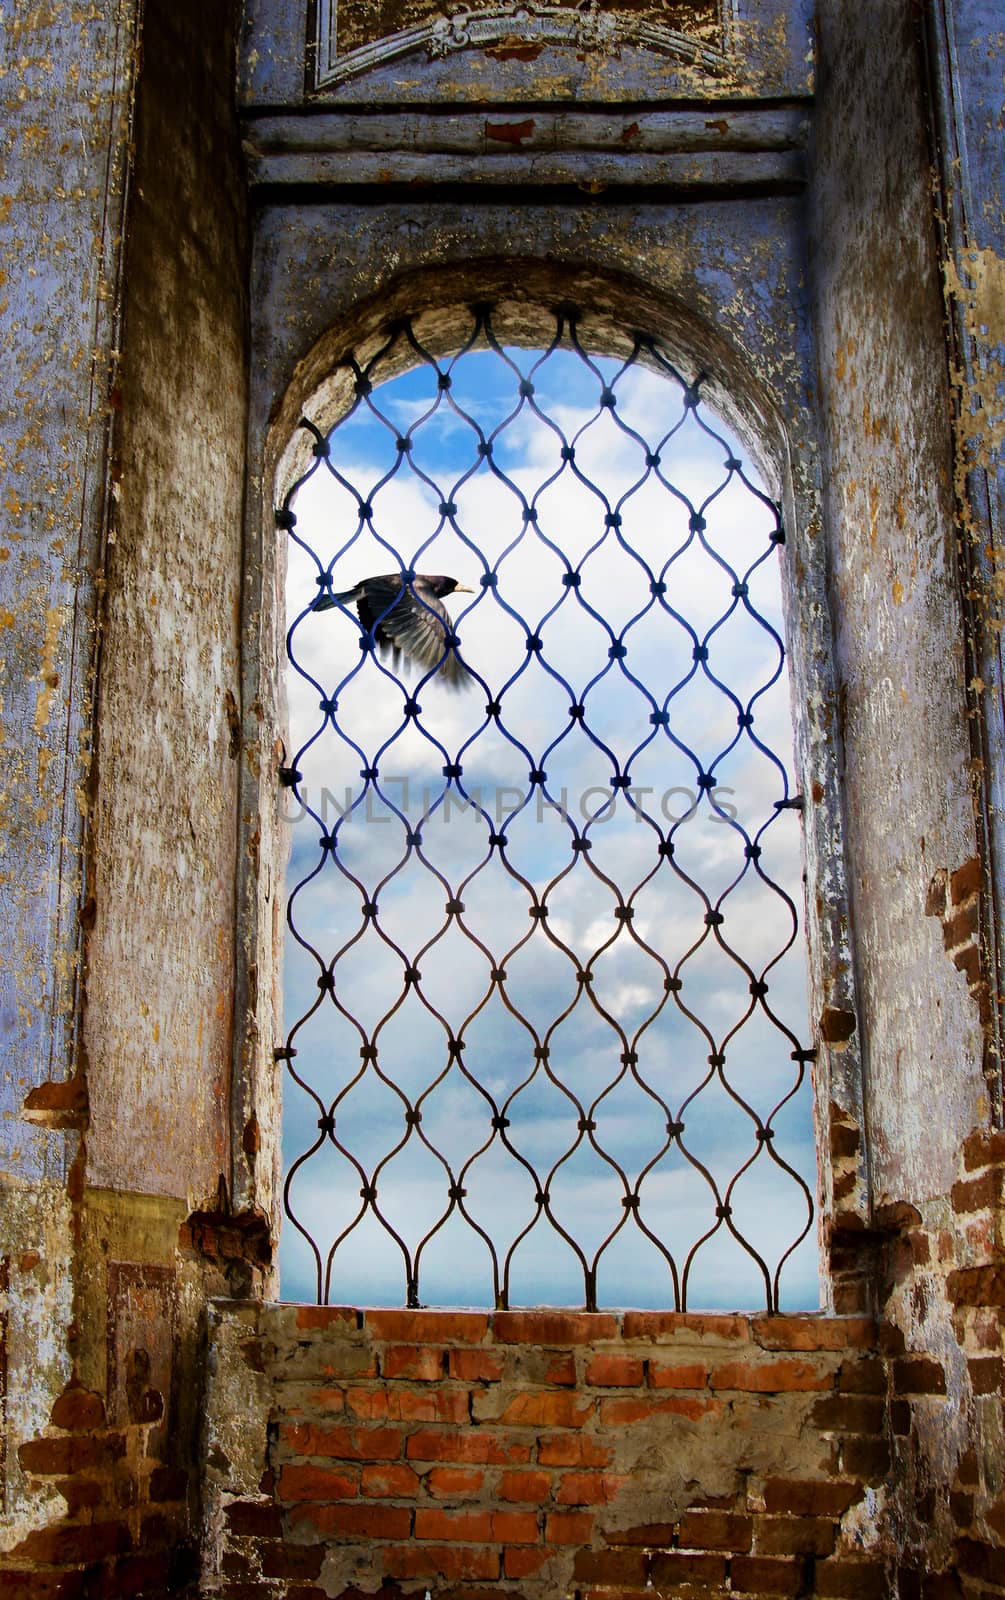  church window by yurii_bizgaimer